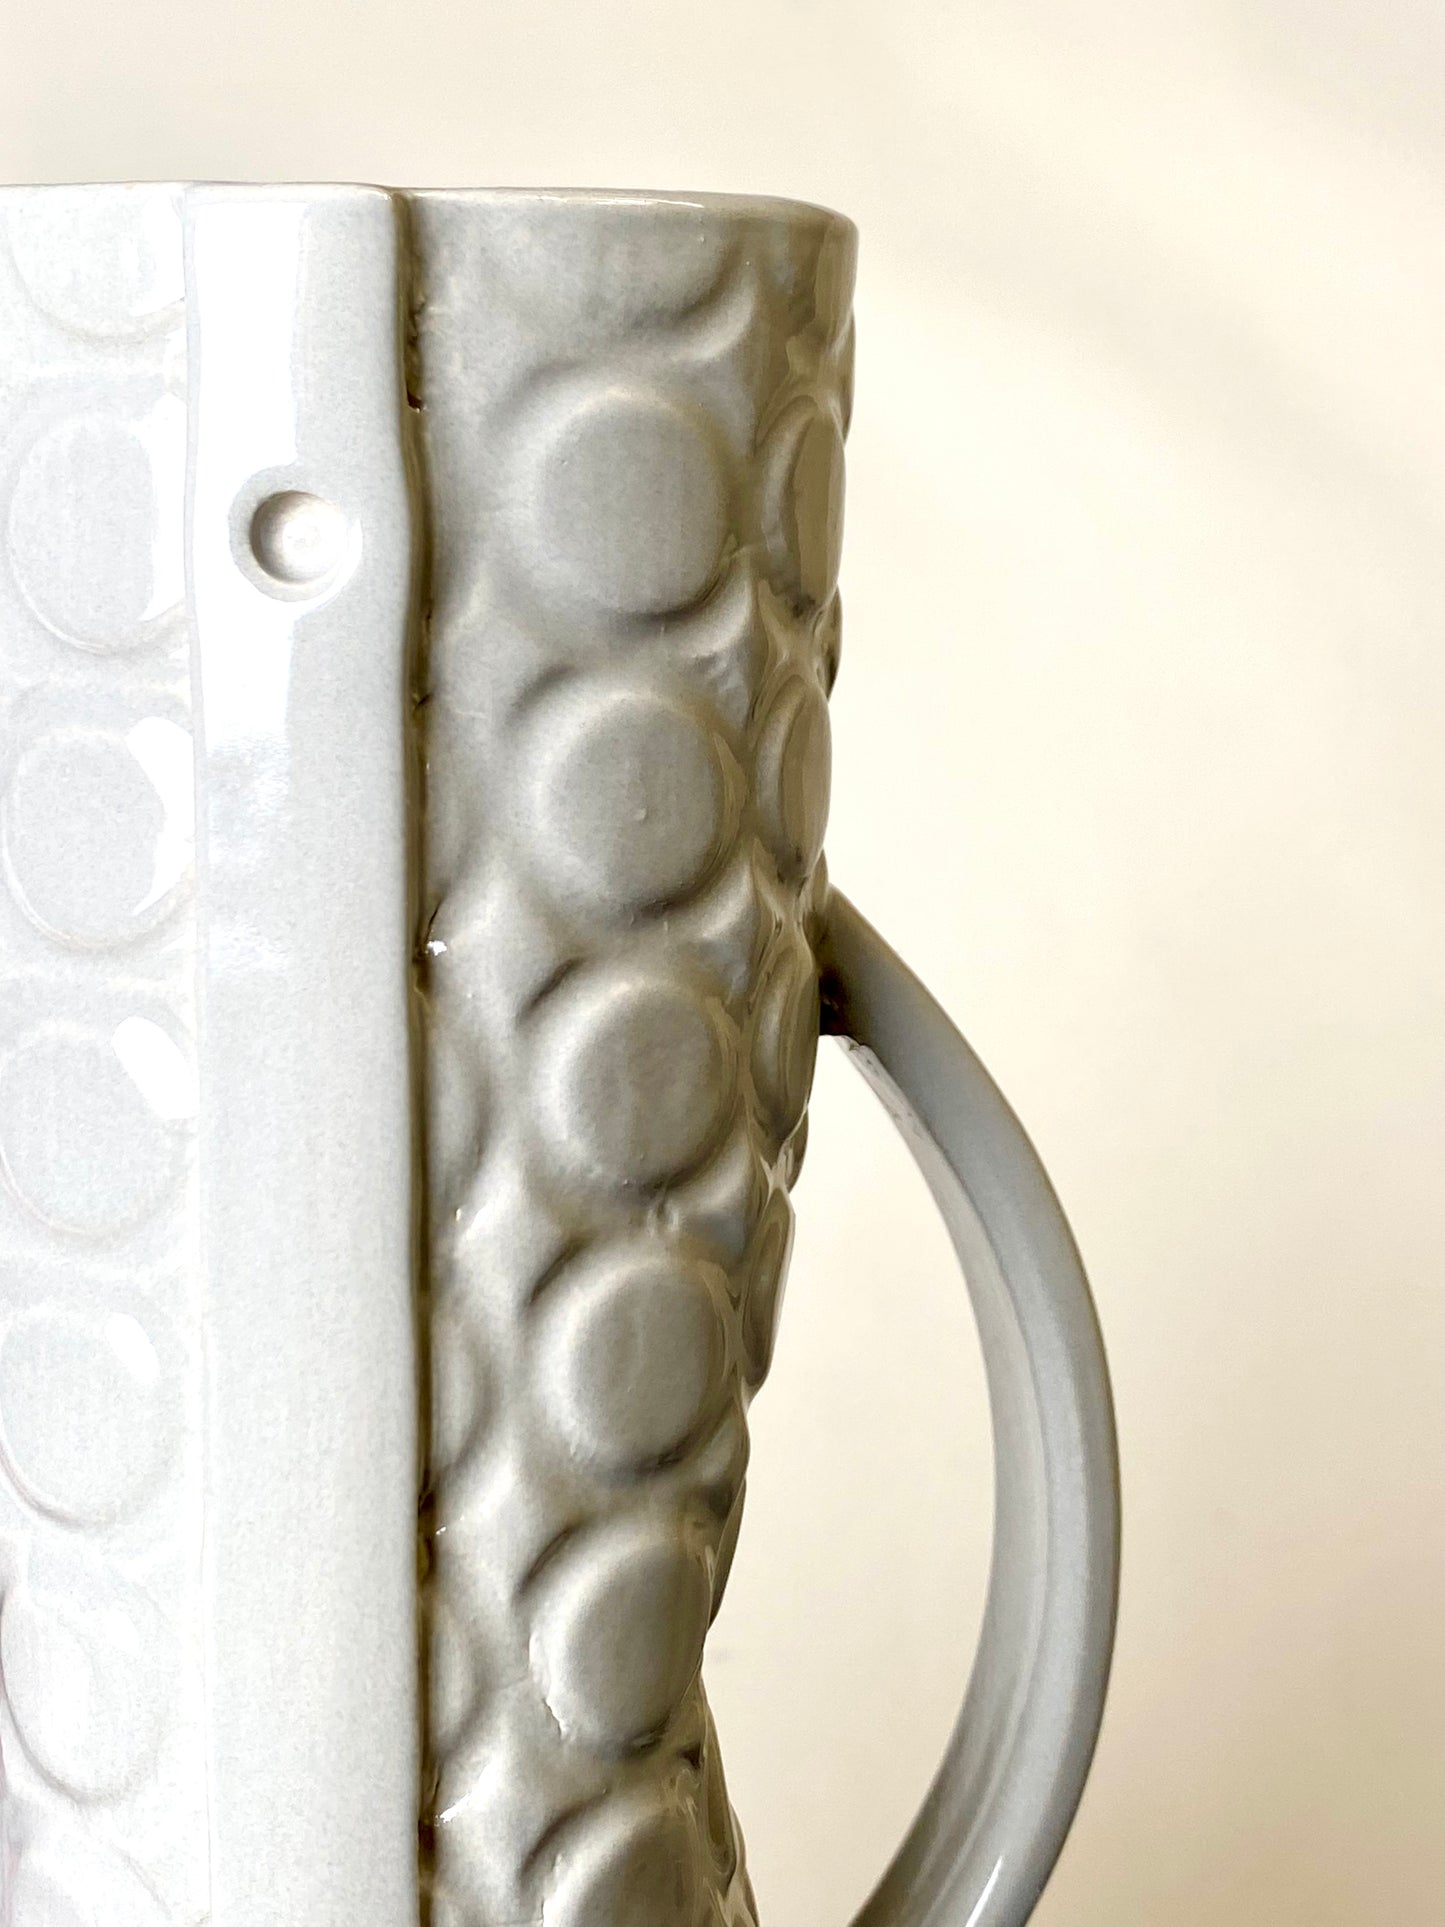 Gray Pattern Vase